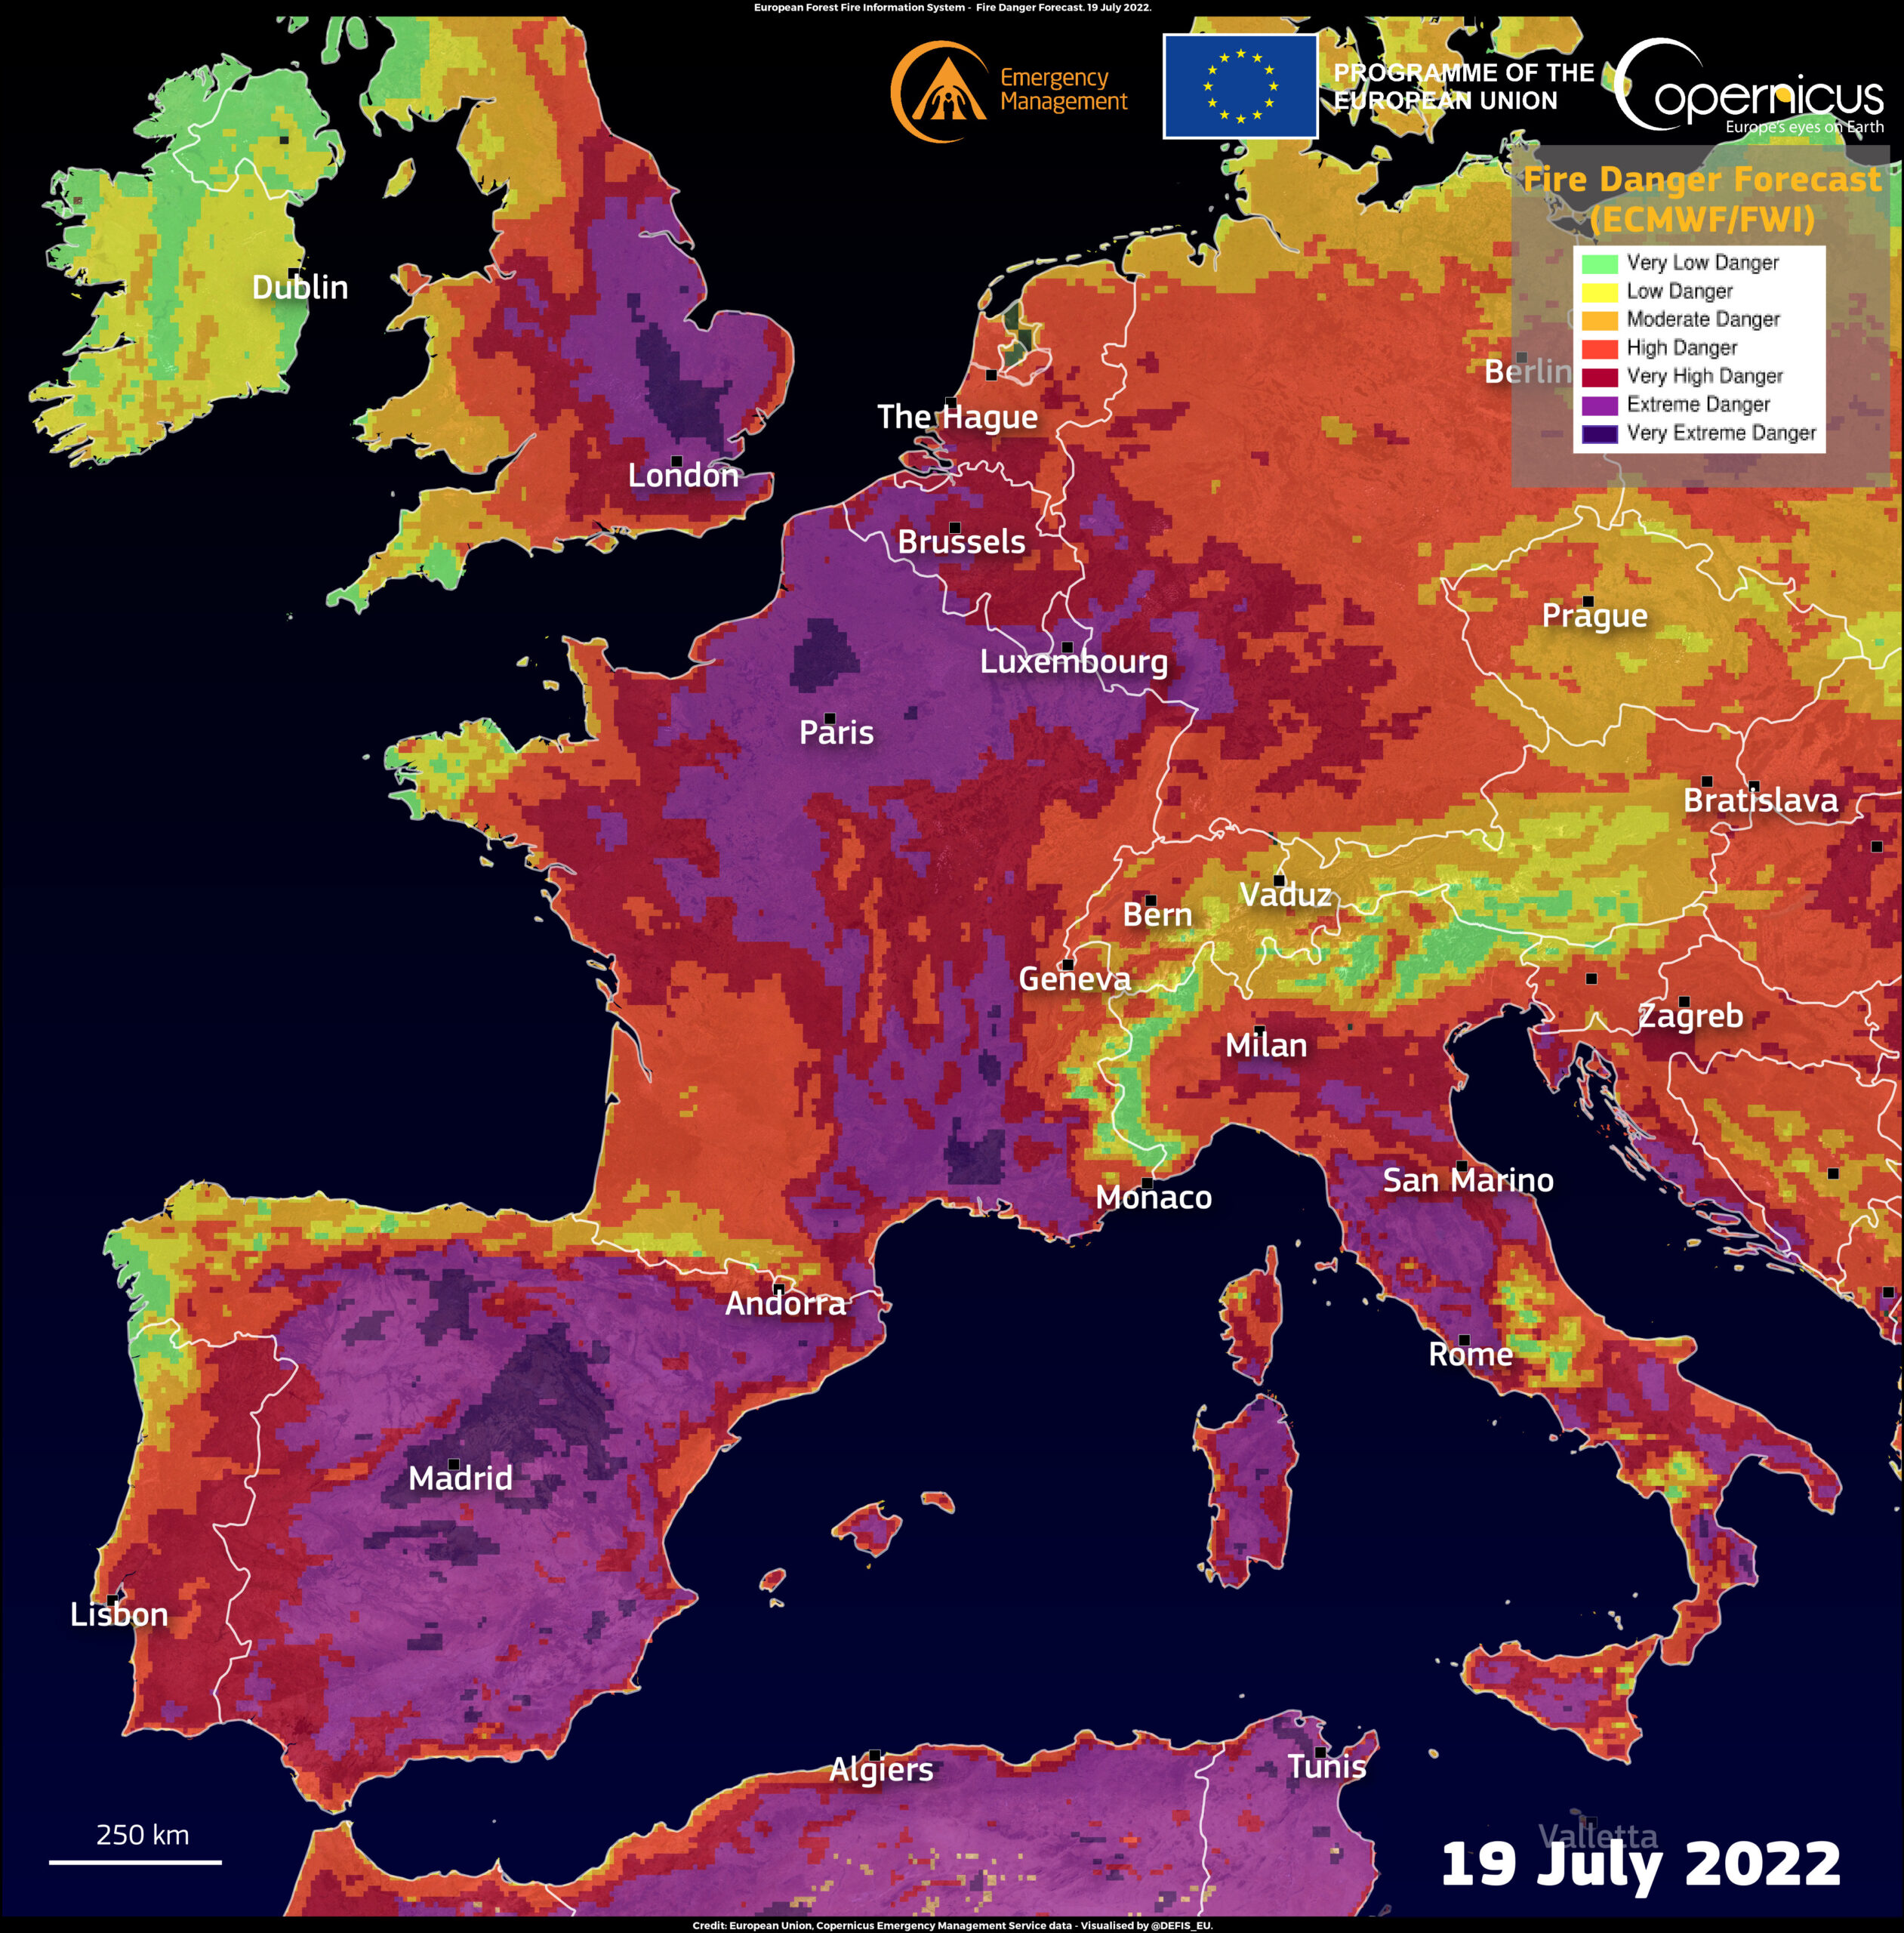 如 2022 年 7 月 19 日的這張圖片所示，顯示了火災的危險等級，最高級別的風險出現在西班牙、法國、義大利和英國。(圖片來源：哥白尼)